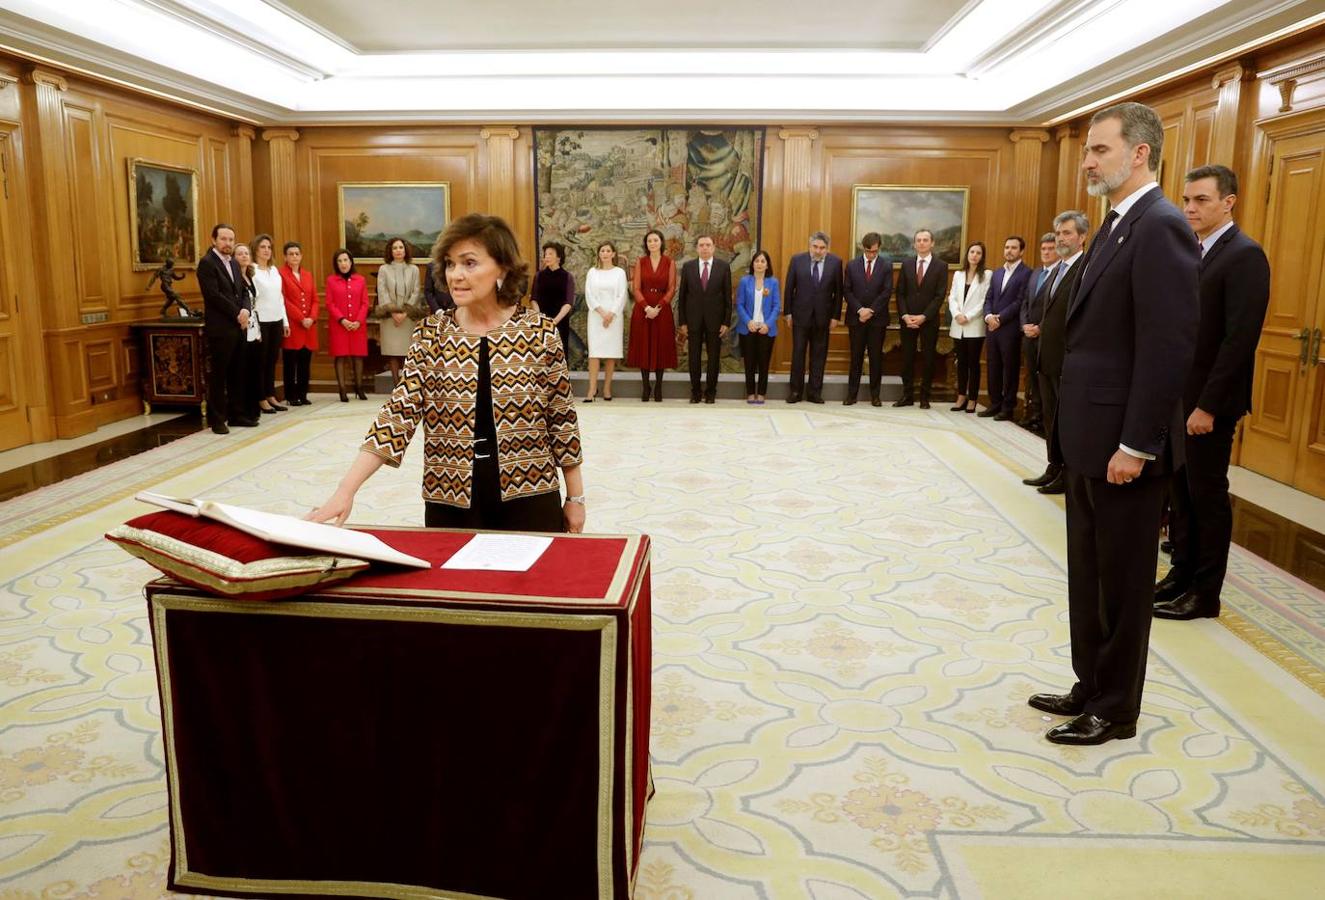 La vicepresidenta primera del Gobierno, ministra de Presidencia, Relaciones con las Cortes y Memoria Democrática, Carmen Calvo, promete su cargo ante el rey Felipe VI.